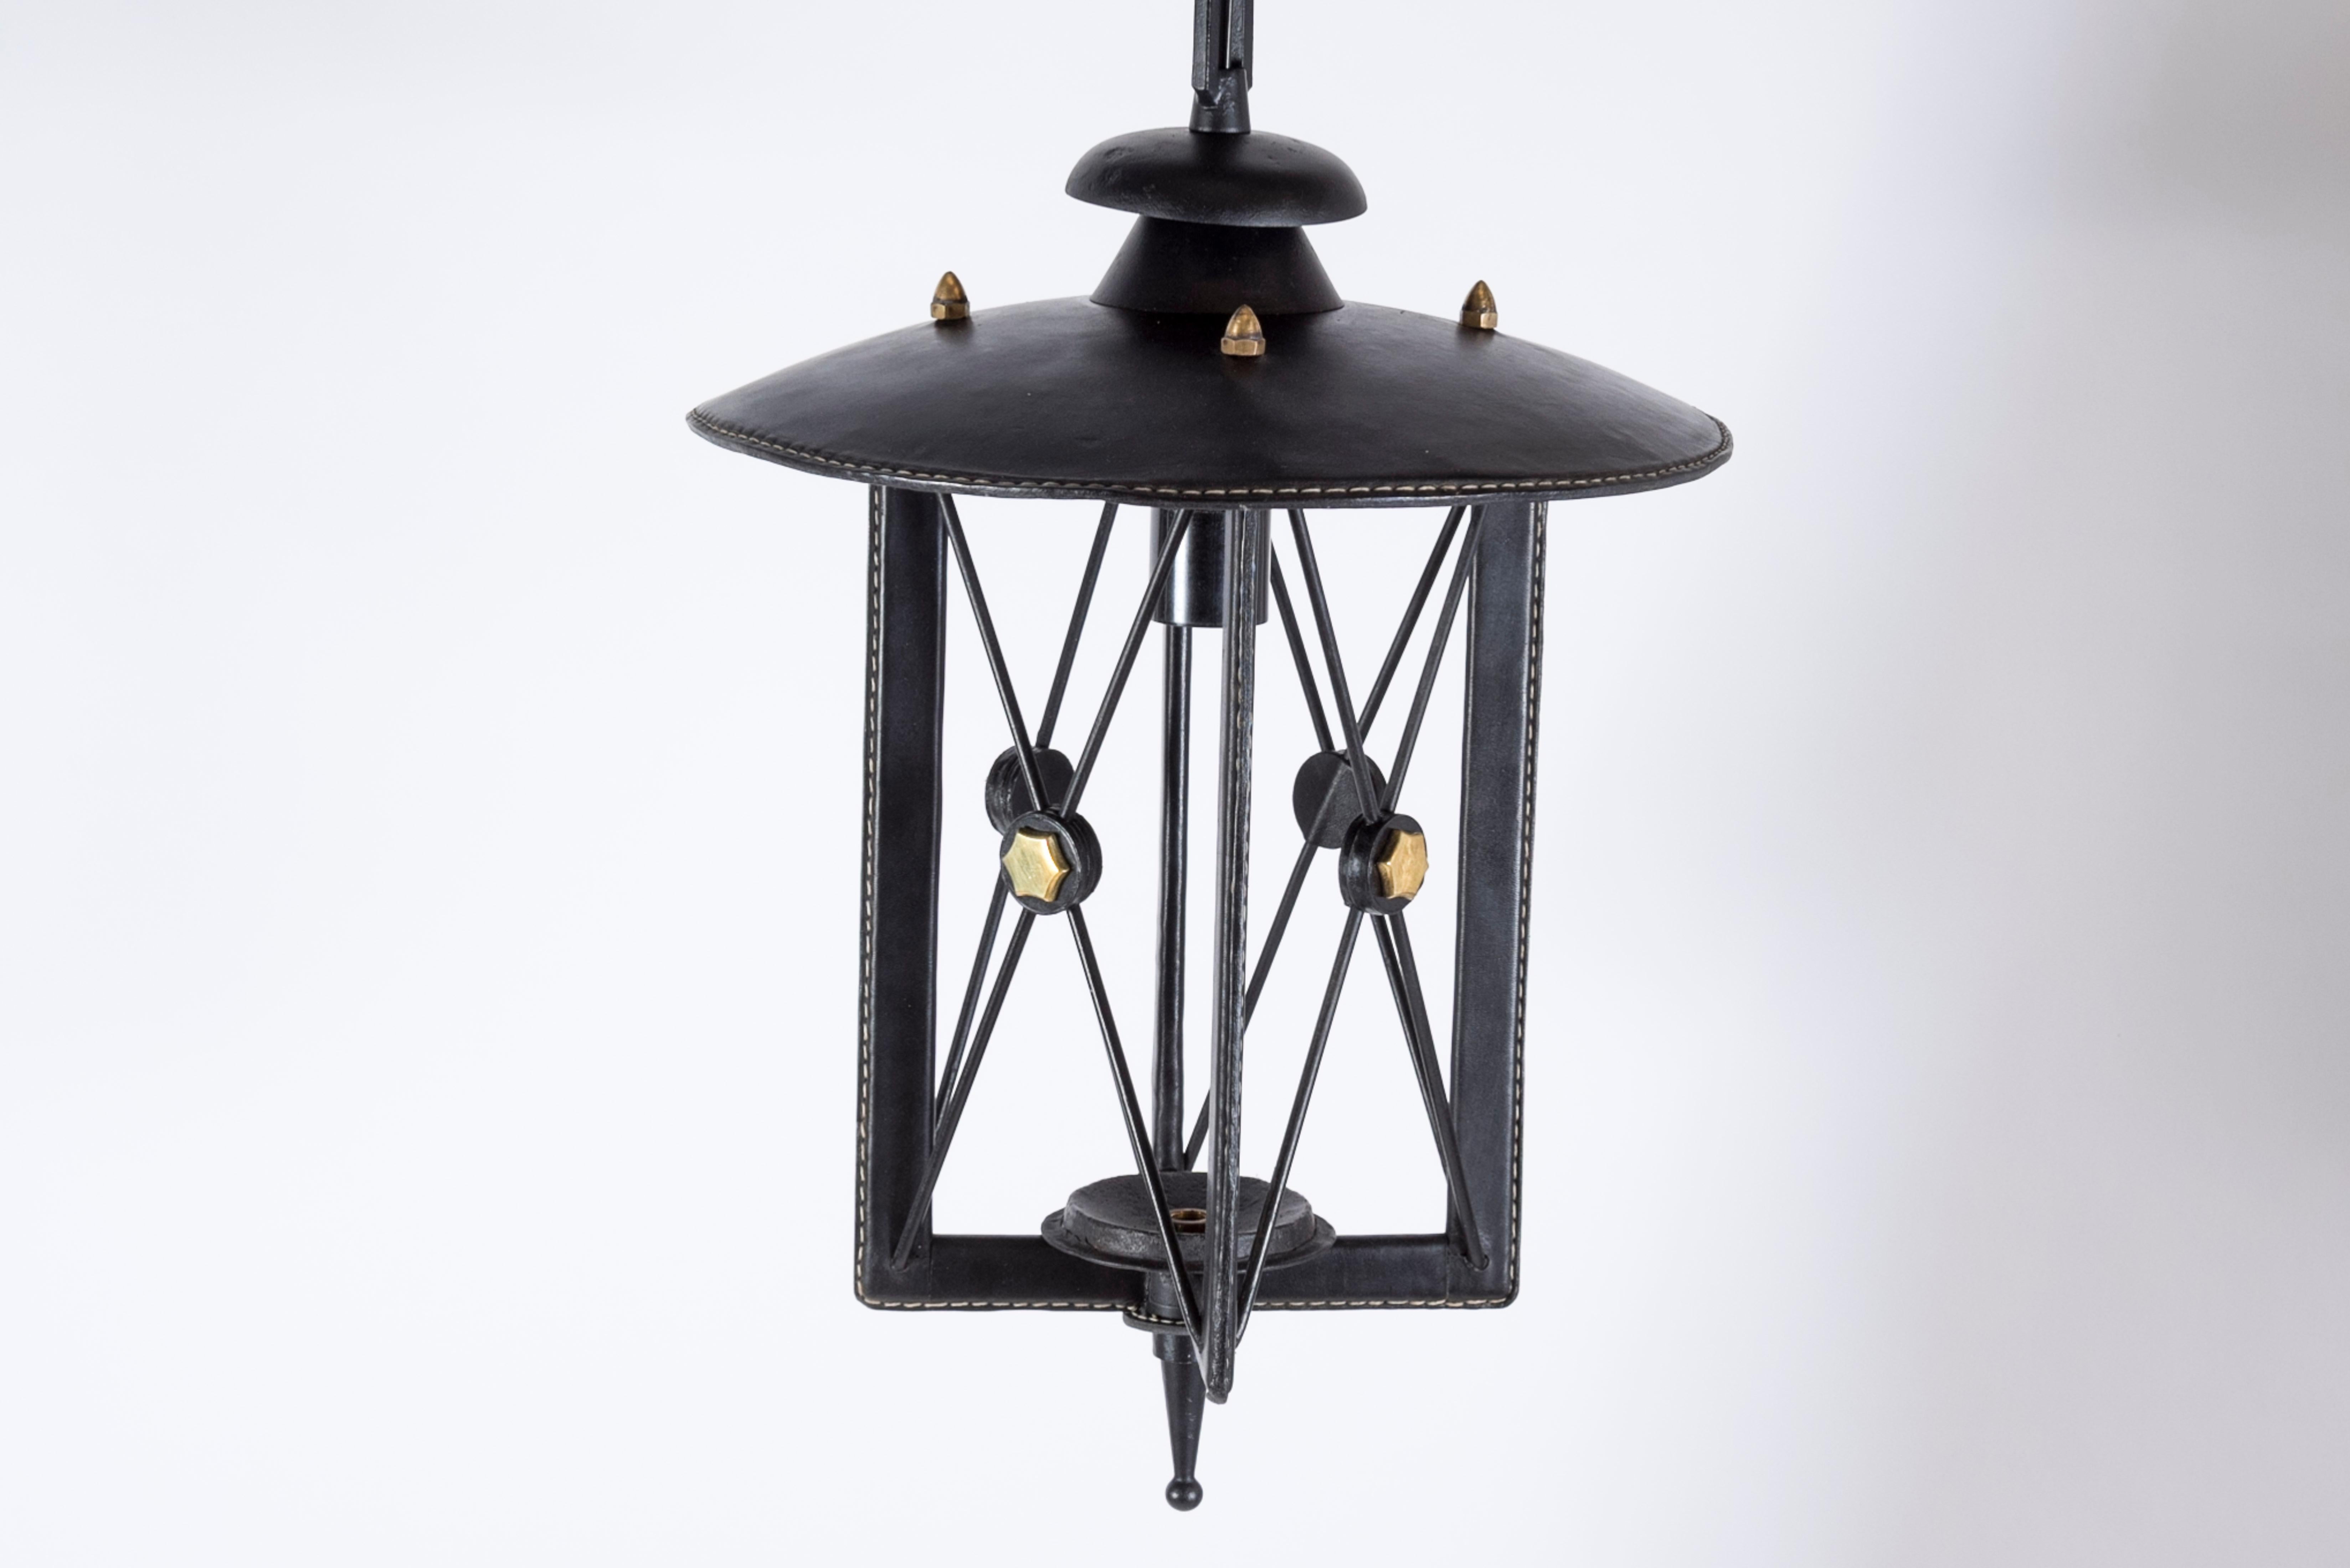 Lanterne en cuir cousu des années 1950 par Jacques Adnet
Cuir noir
France.